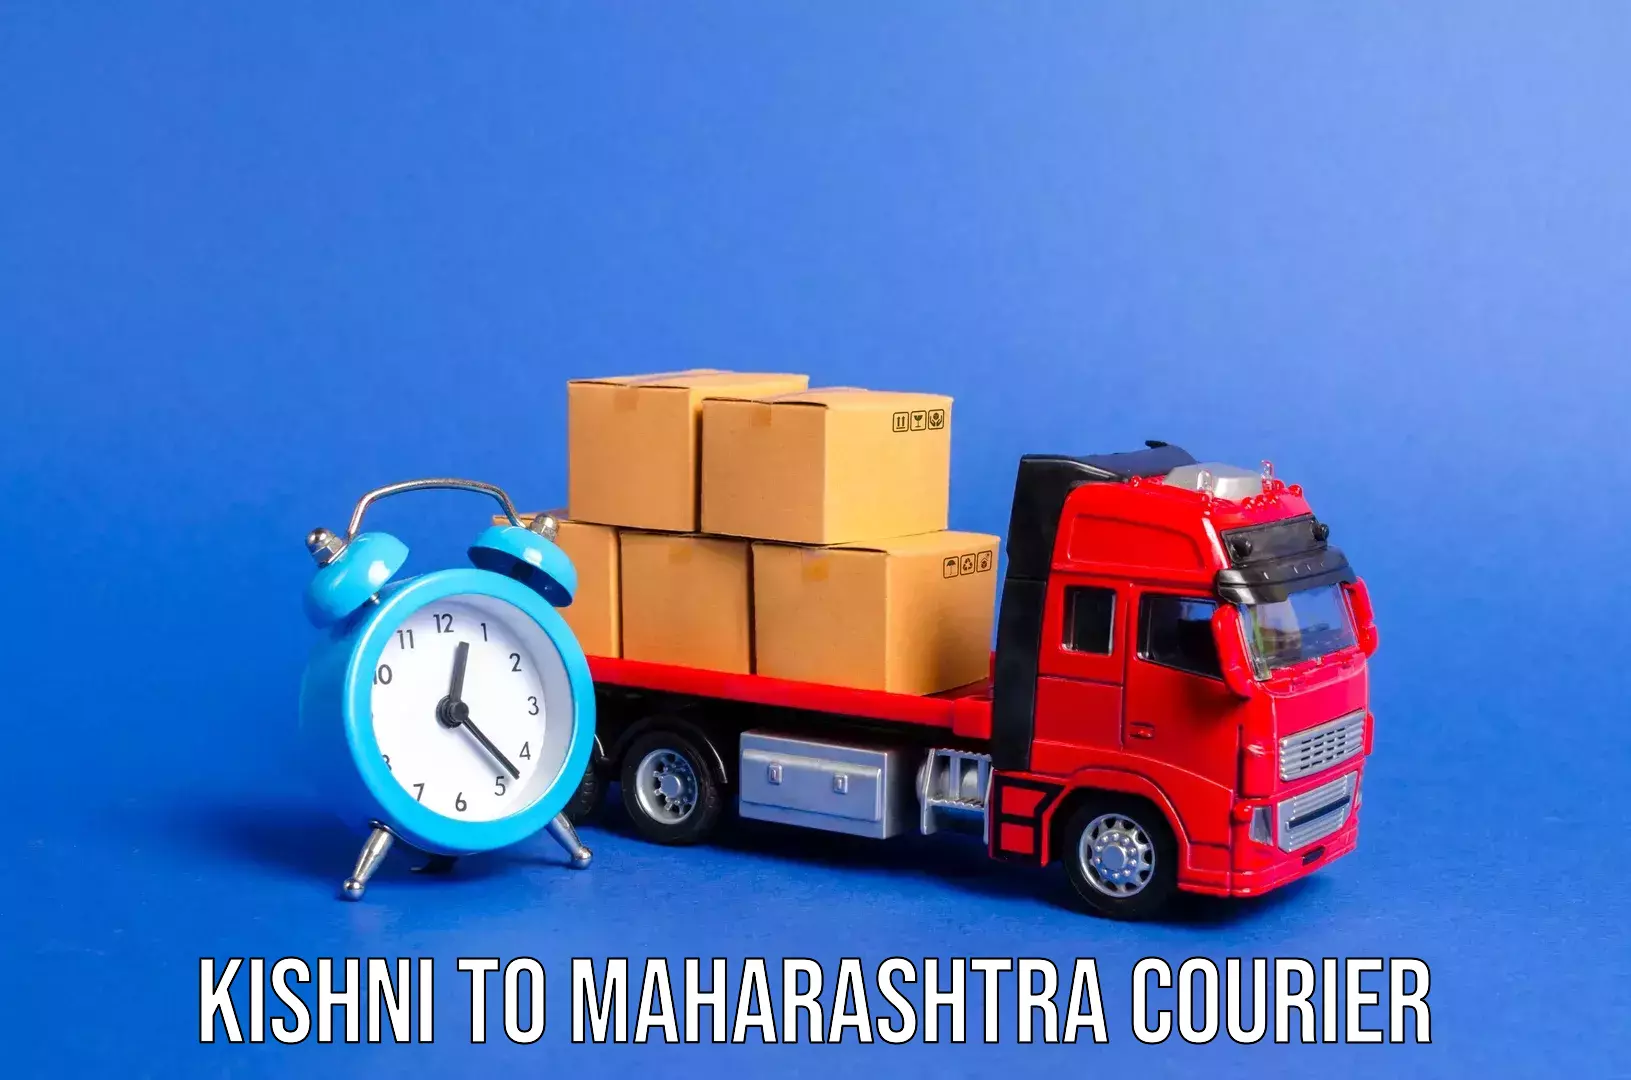 Nationwide luggage courier Kishni to Mumbai